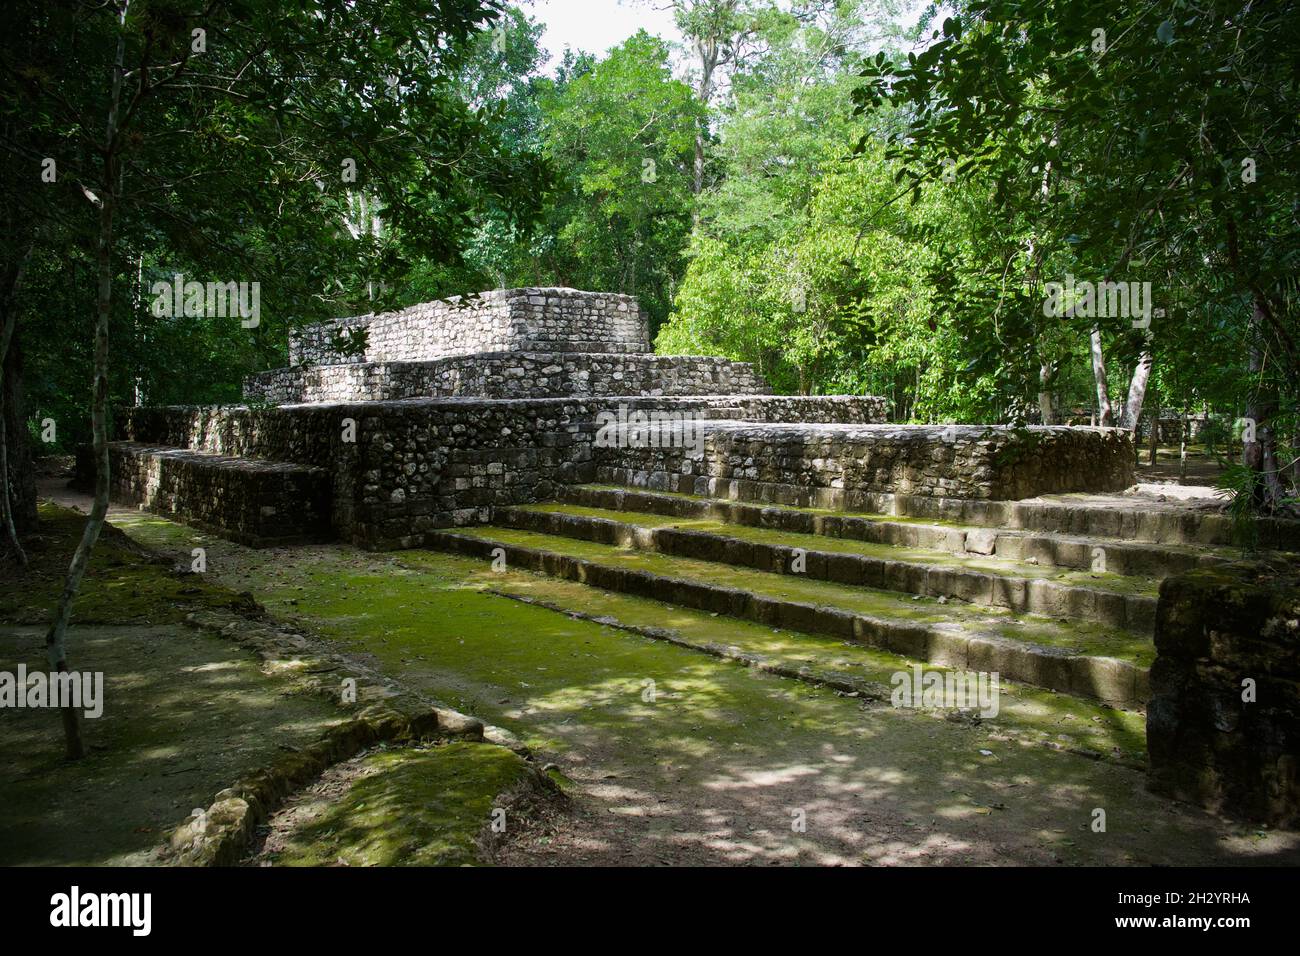 Calakmul, Mayan ruins, Mexico Stock Photo